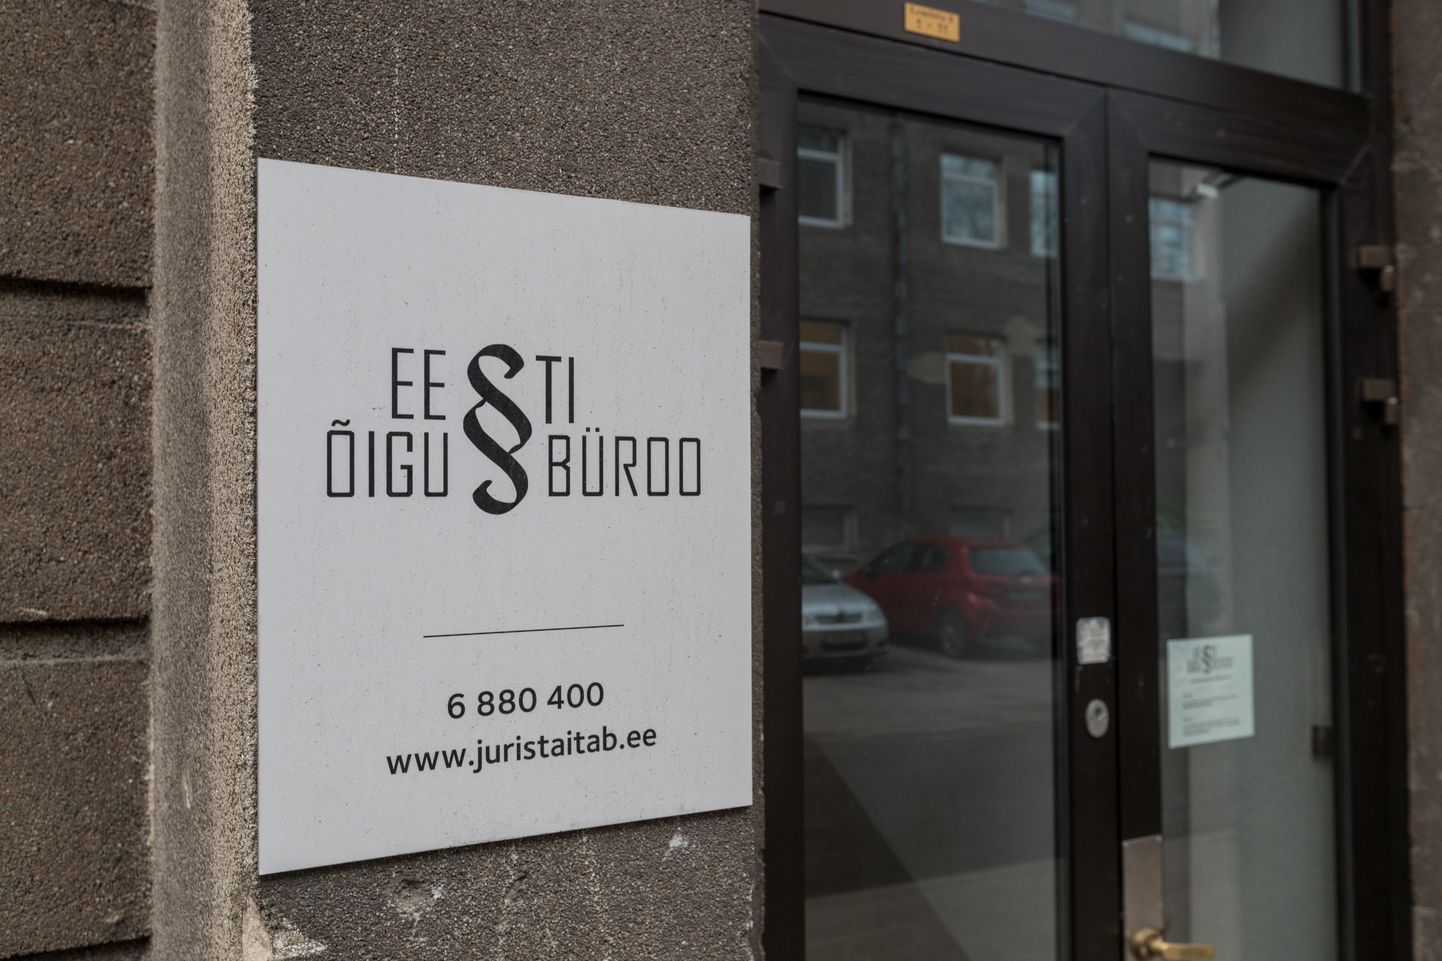 Õigusbüroo esindused tegutsevad üle Eesti. Neisse kohe sisse astuda ei tasu, enne tuleks aeg kinni panna.